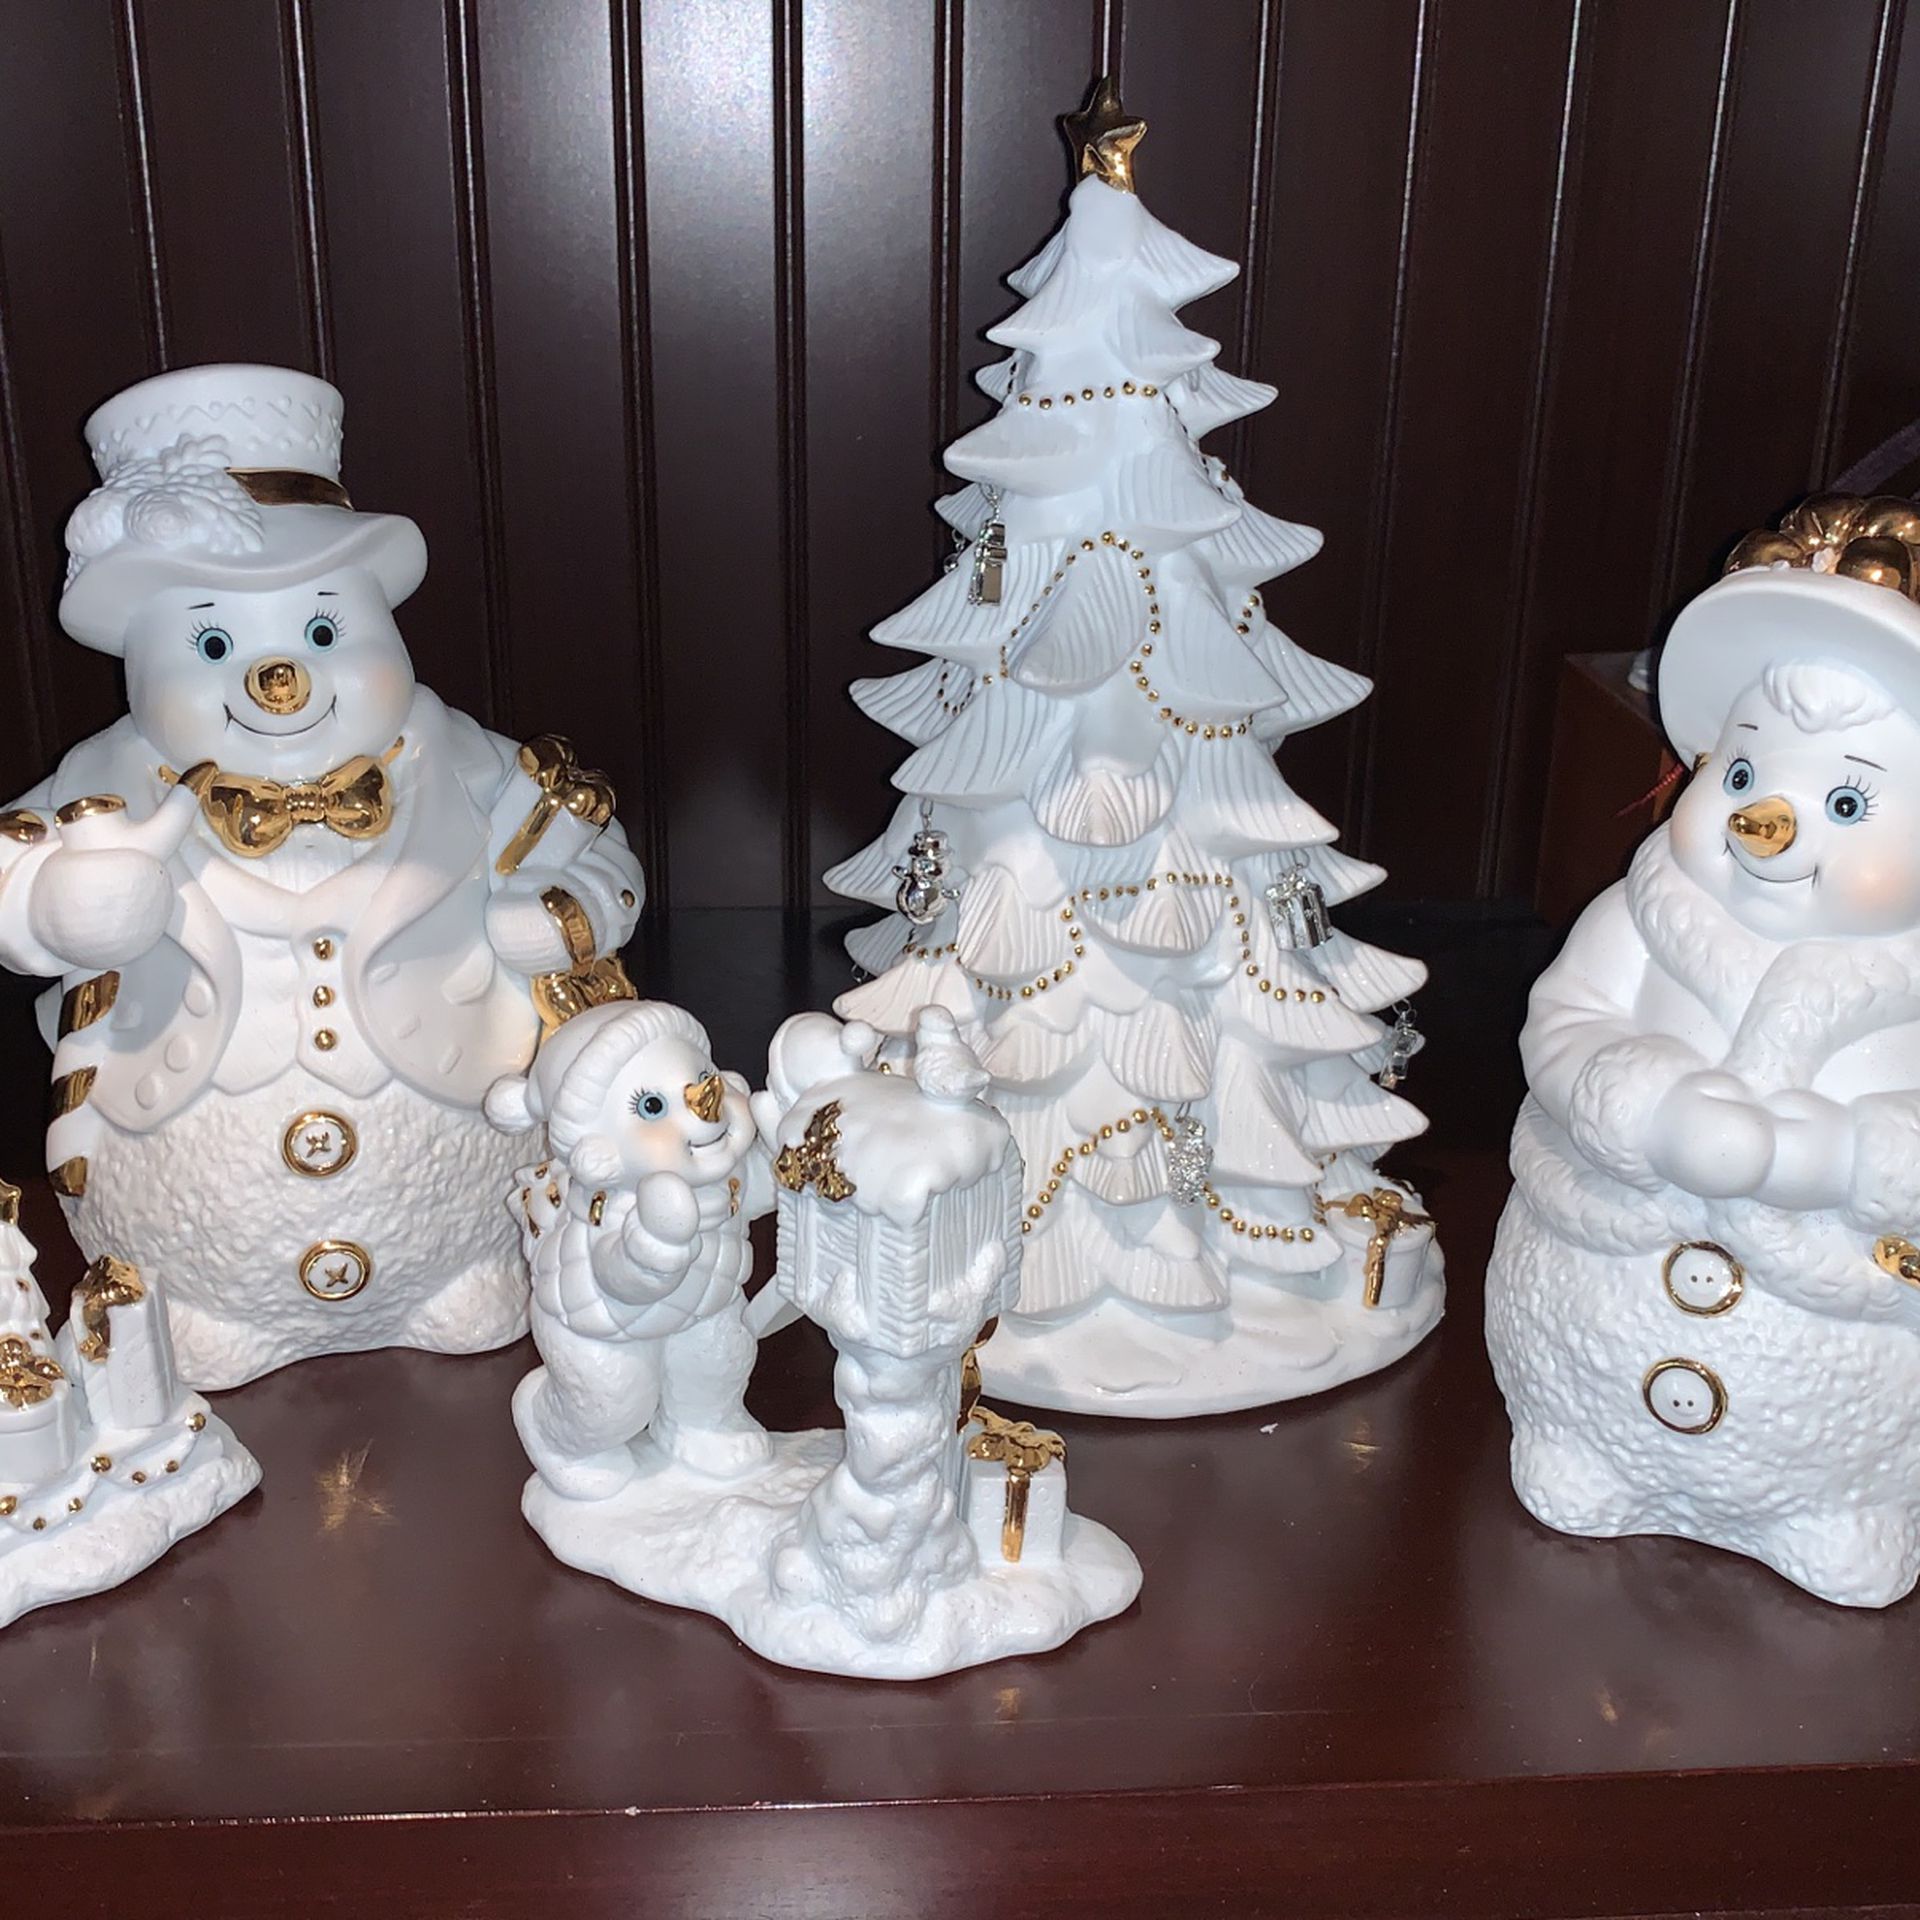 Grandeur Noel 2000 Collector Series porcelain snowman Family figurines set